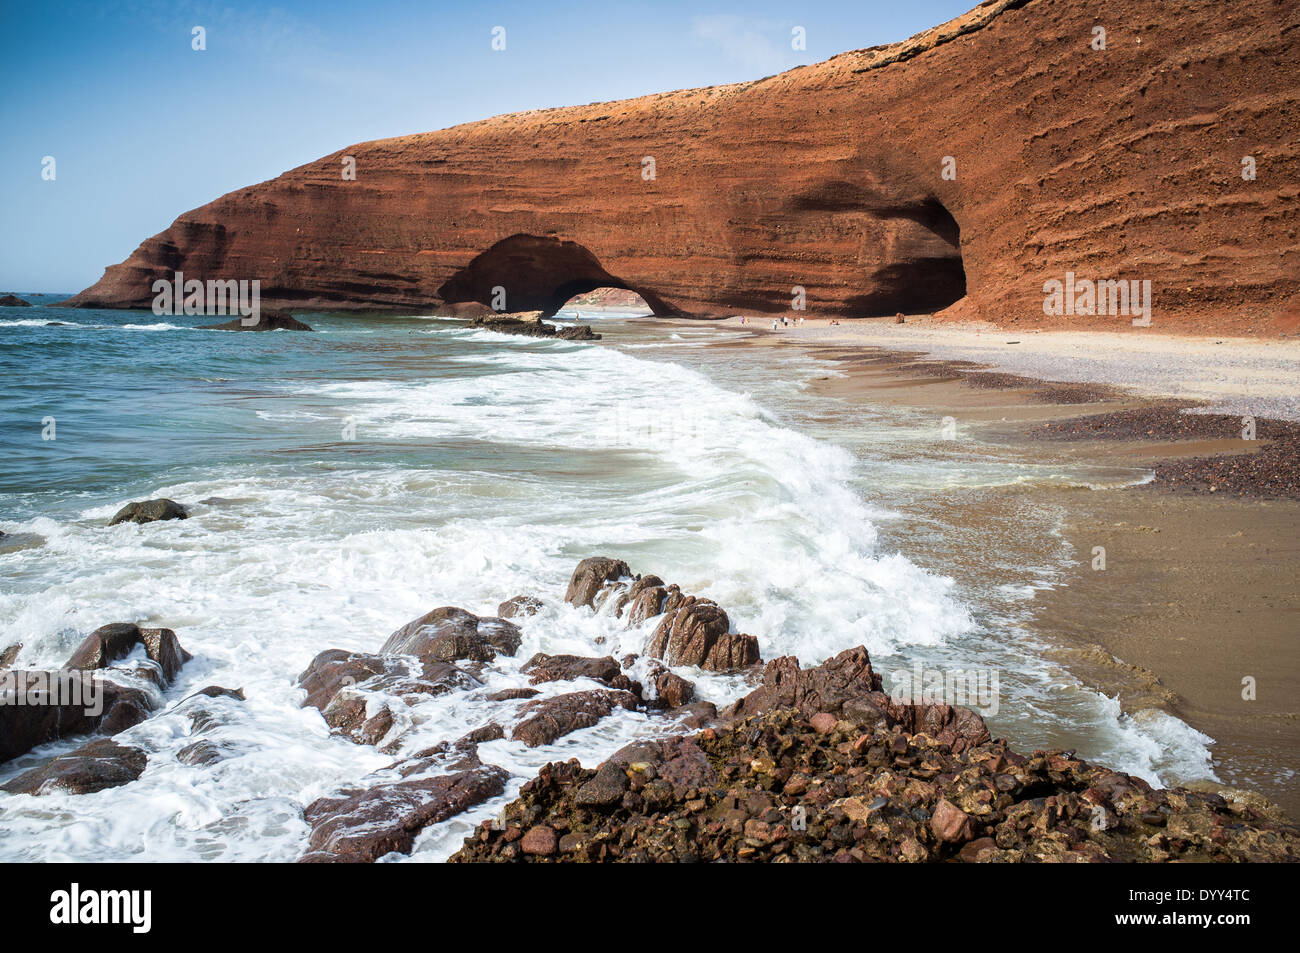 Arcades rouge sur la côte de l'océan atlantique, la plage de Legzira, Sidi Ifni, Maroc, Afrique du Nord Banque D'Images